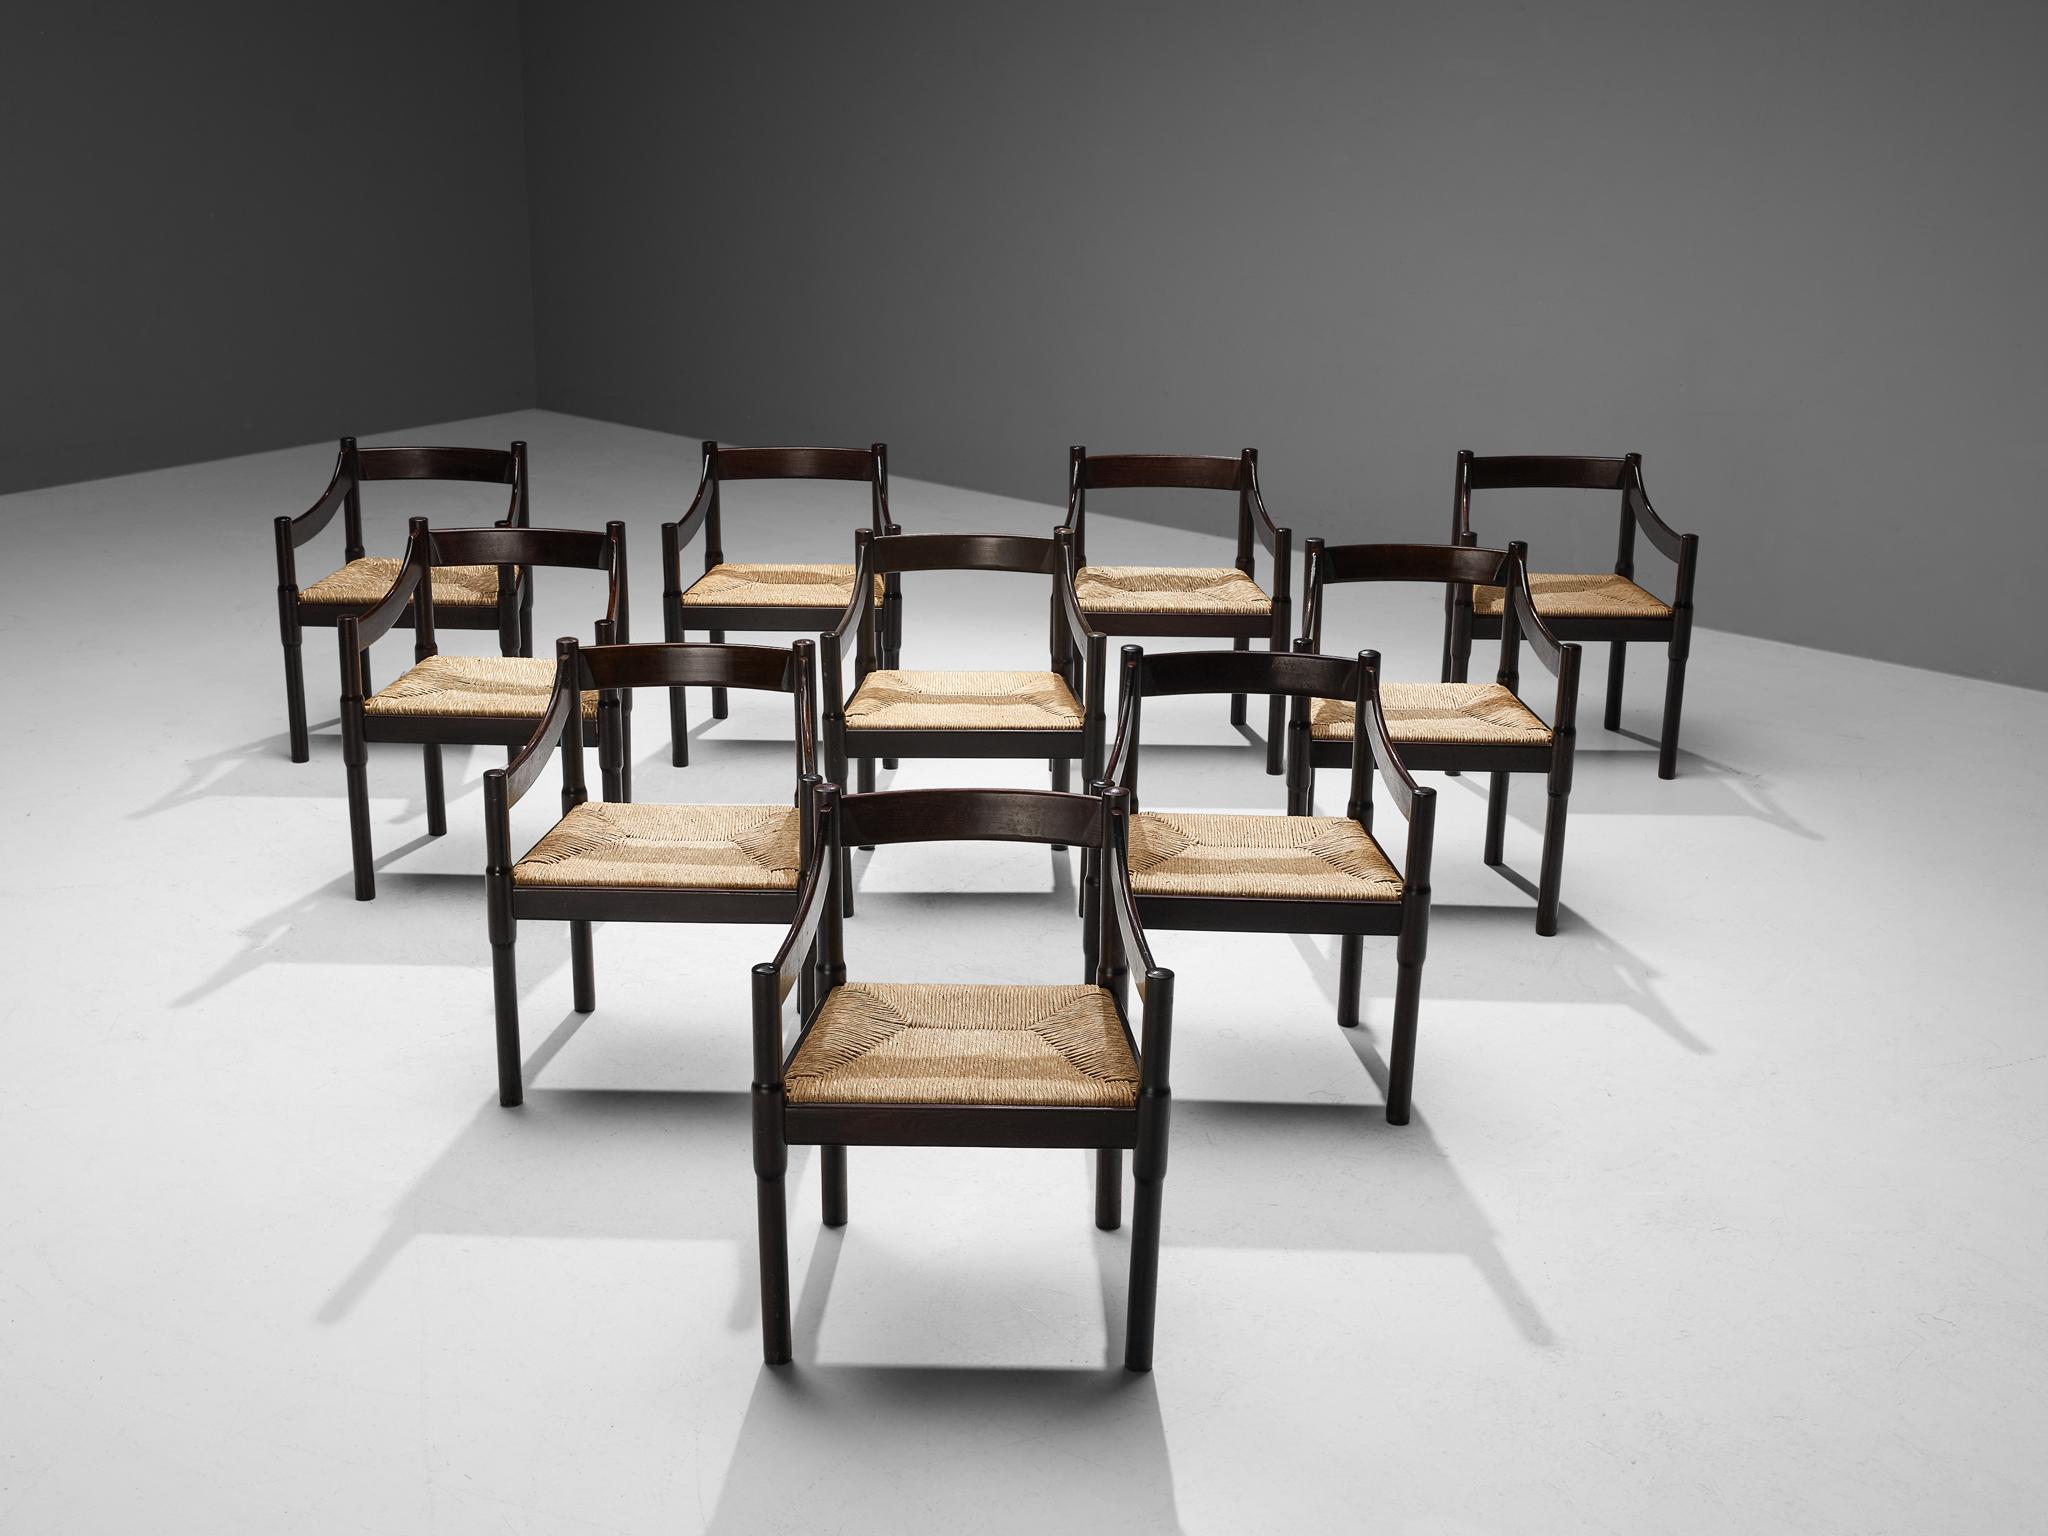 Vico Magistretti, Satz von zehn Esszimmerstühlen Modell 'Carimate', gebeizte Buche, Strohgeflecht, Italien, Entwurf um 1960

Der Stuhl 